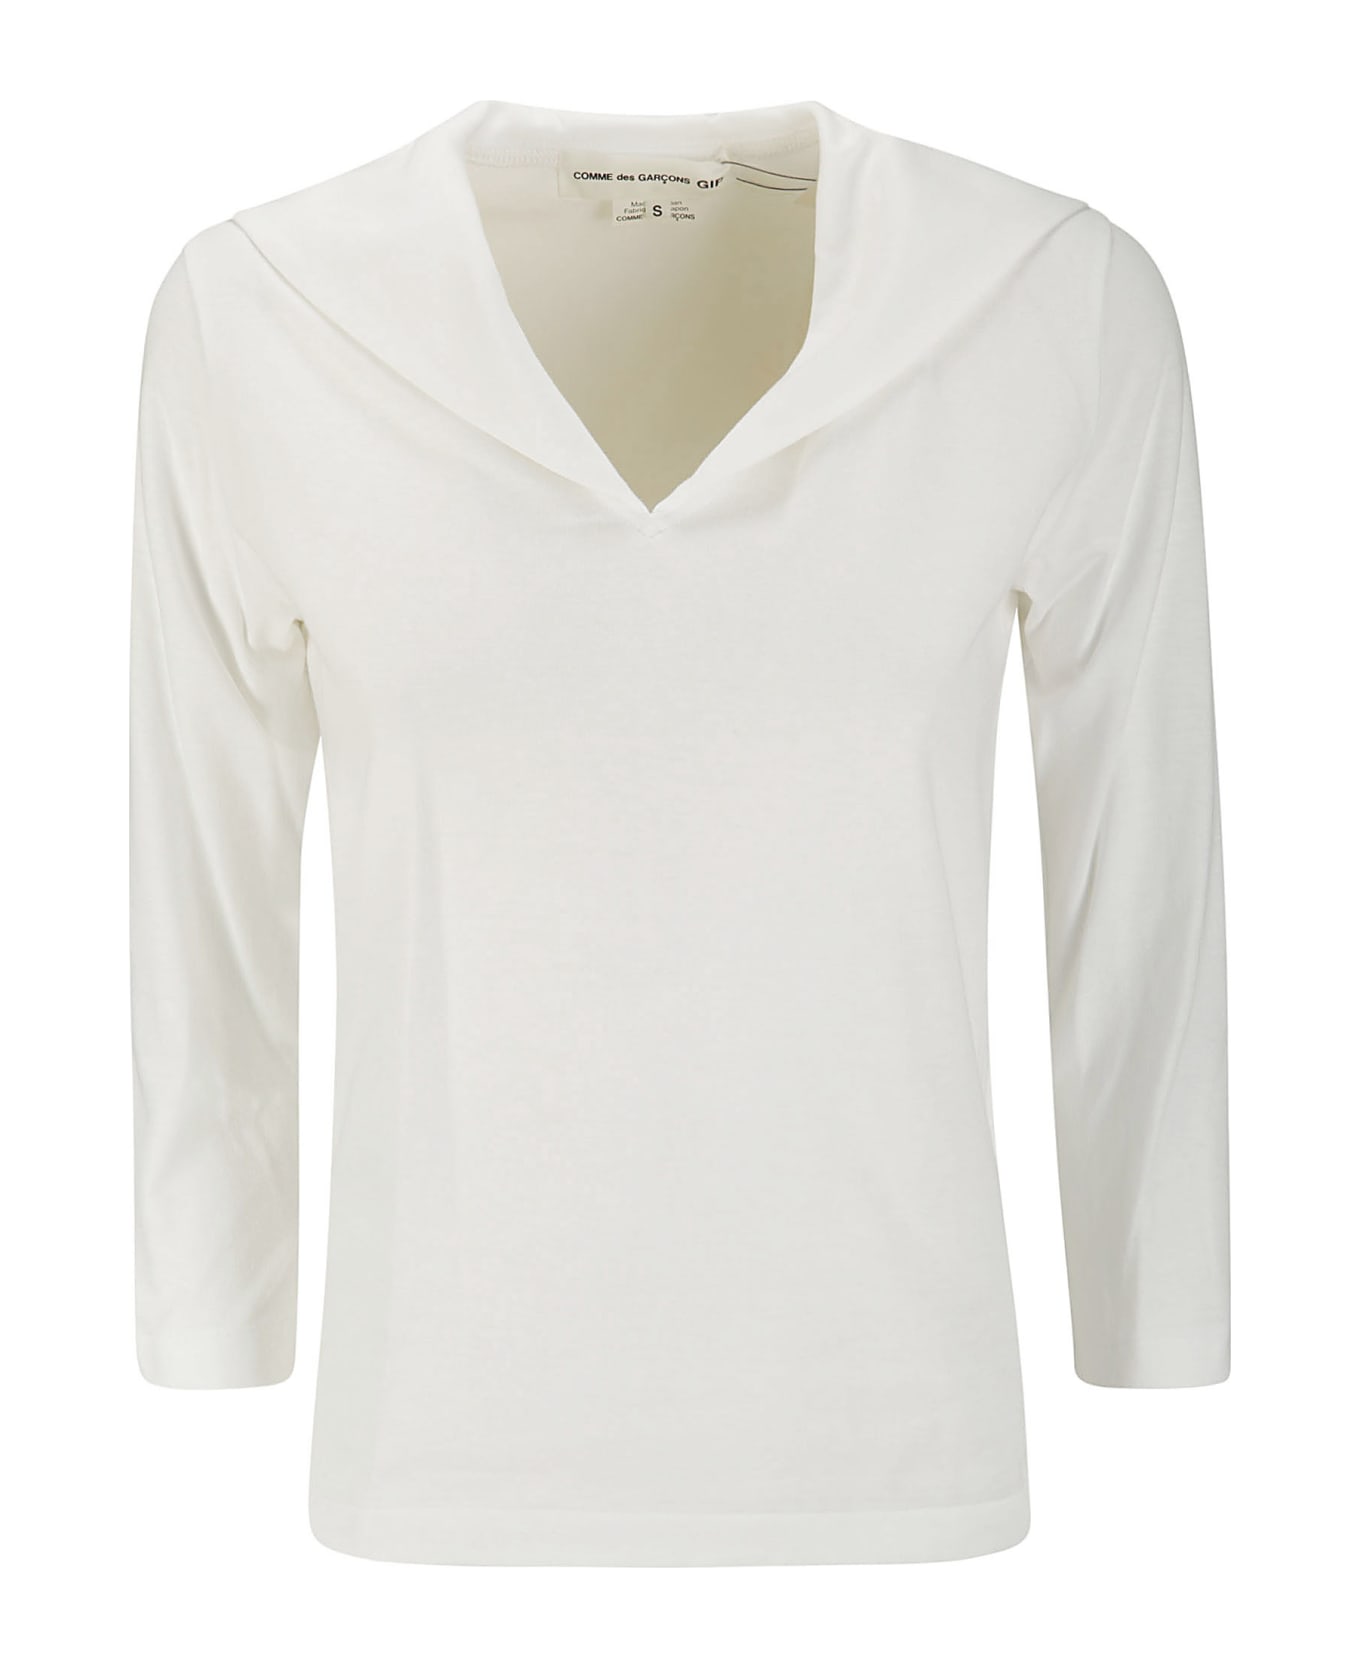 Comme Des Garçons Girl Ladies' T-shirt - WHITE